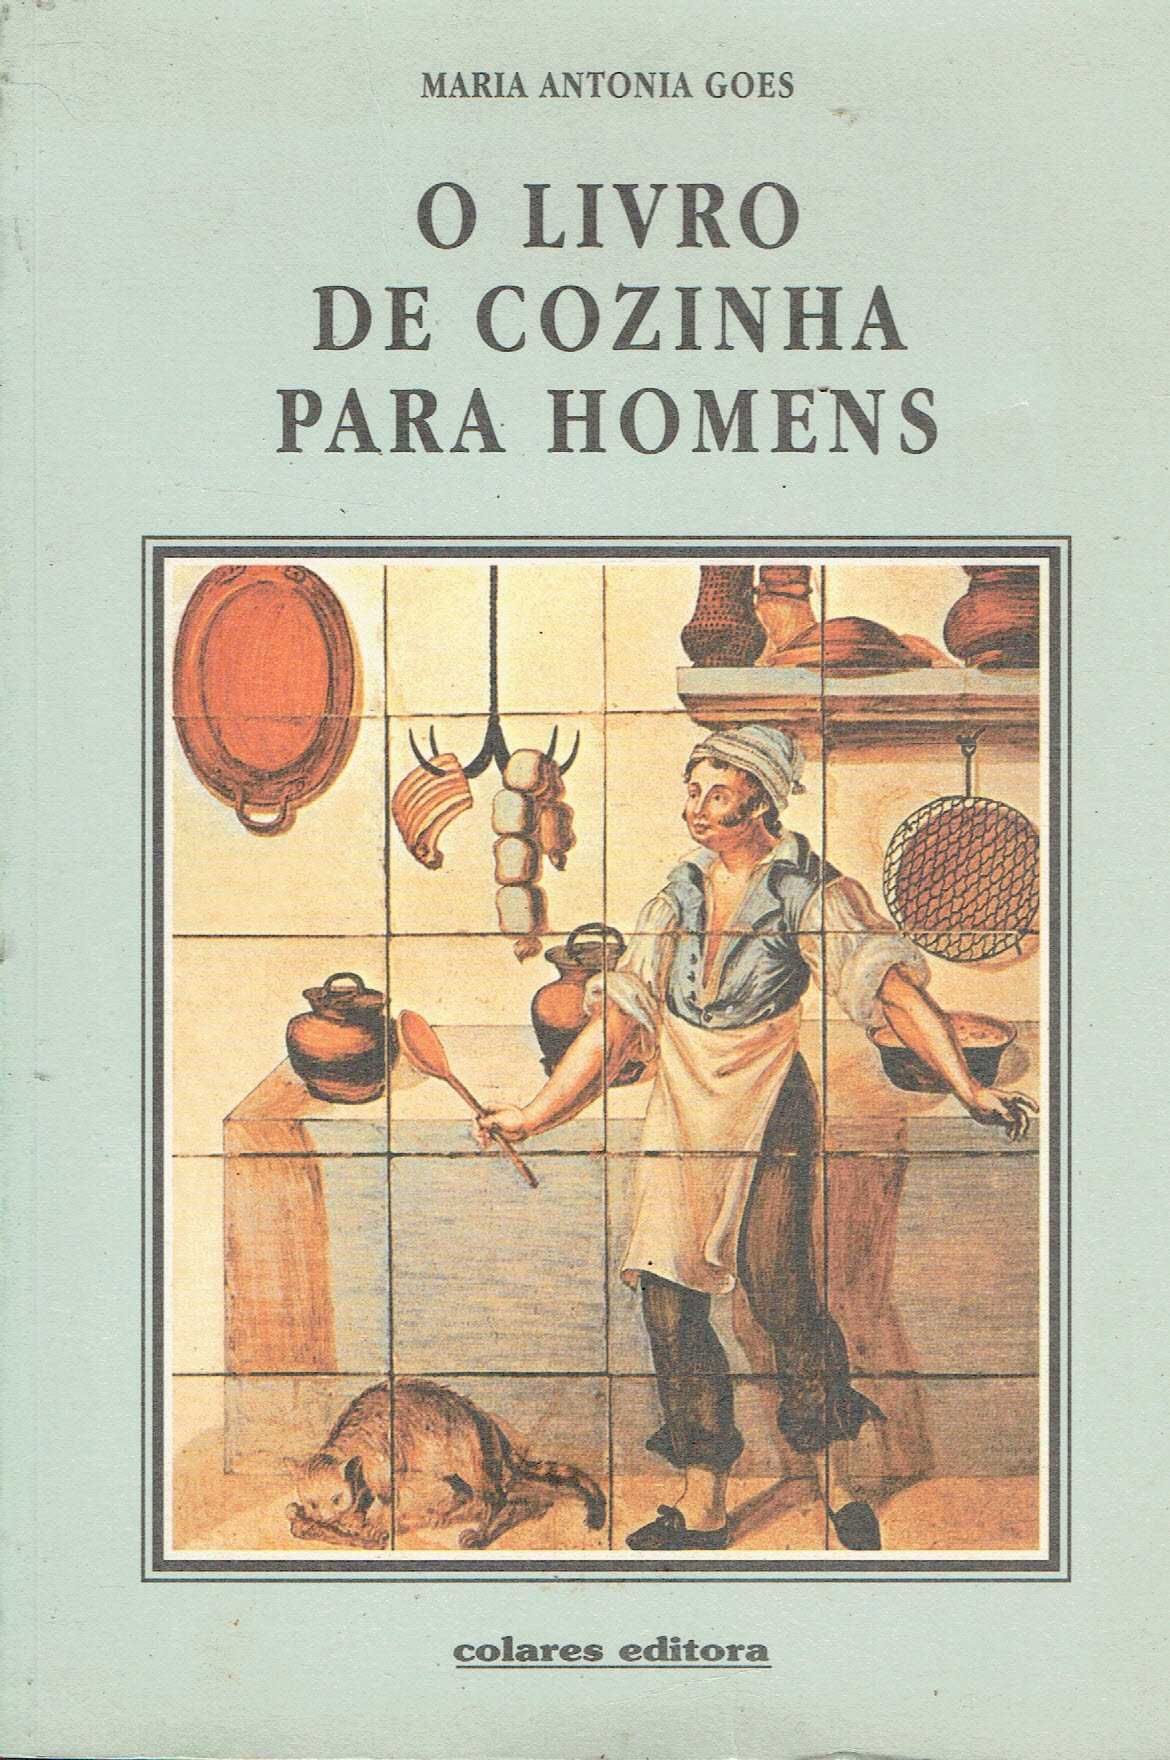 7465

O Livro de Cozinha para Homens
de Maria Antónia Goes